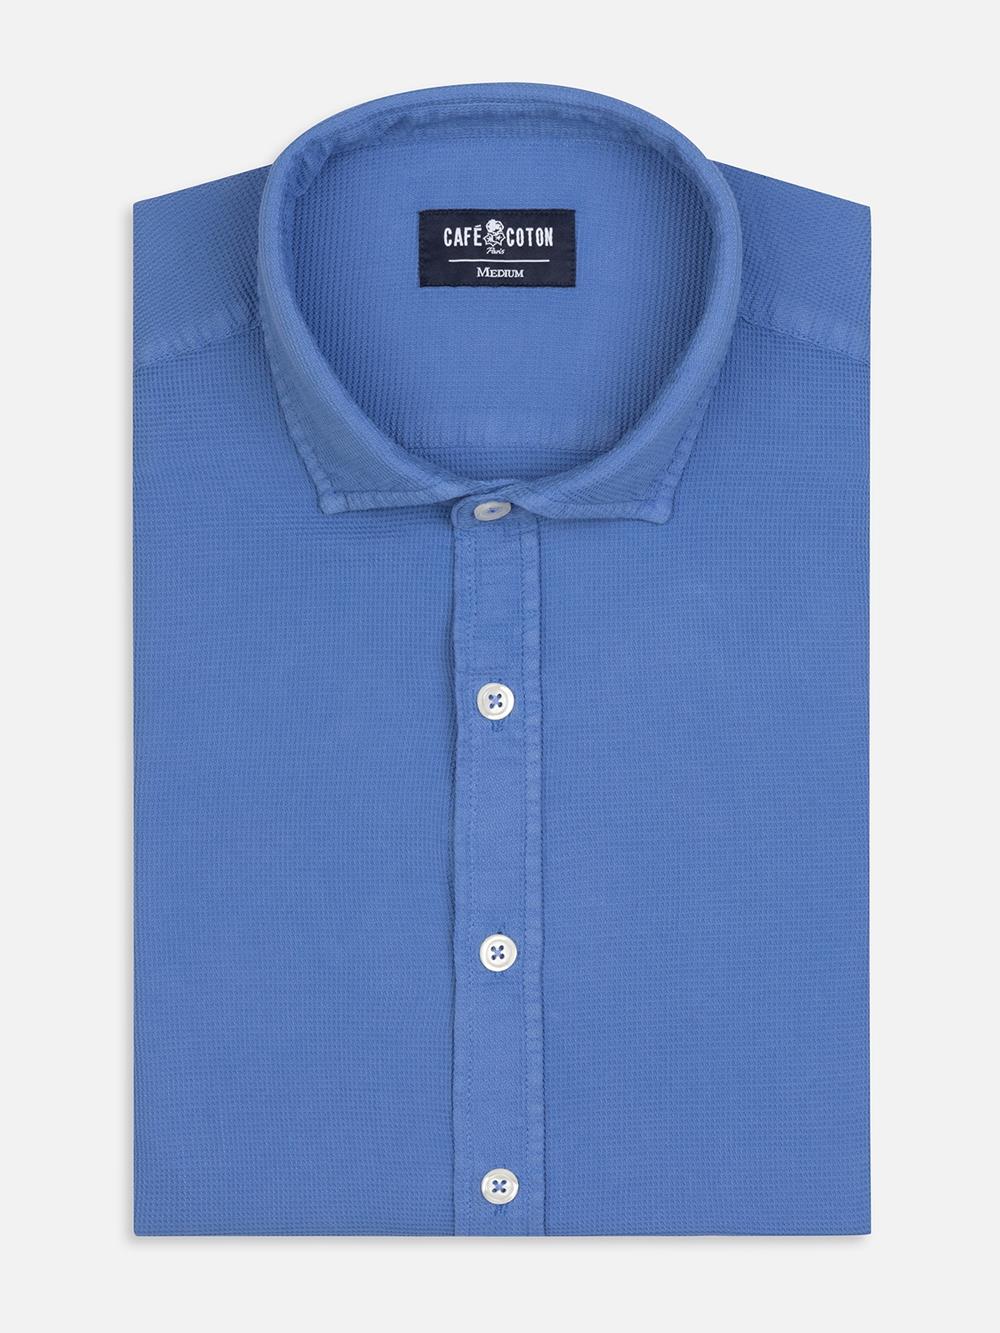 Kerry blue shirt